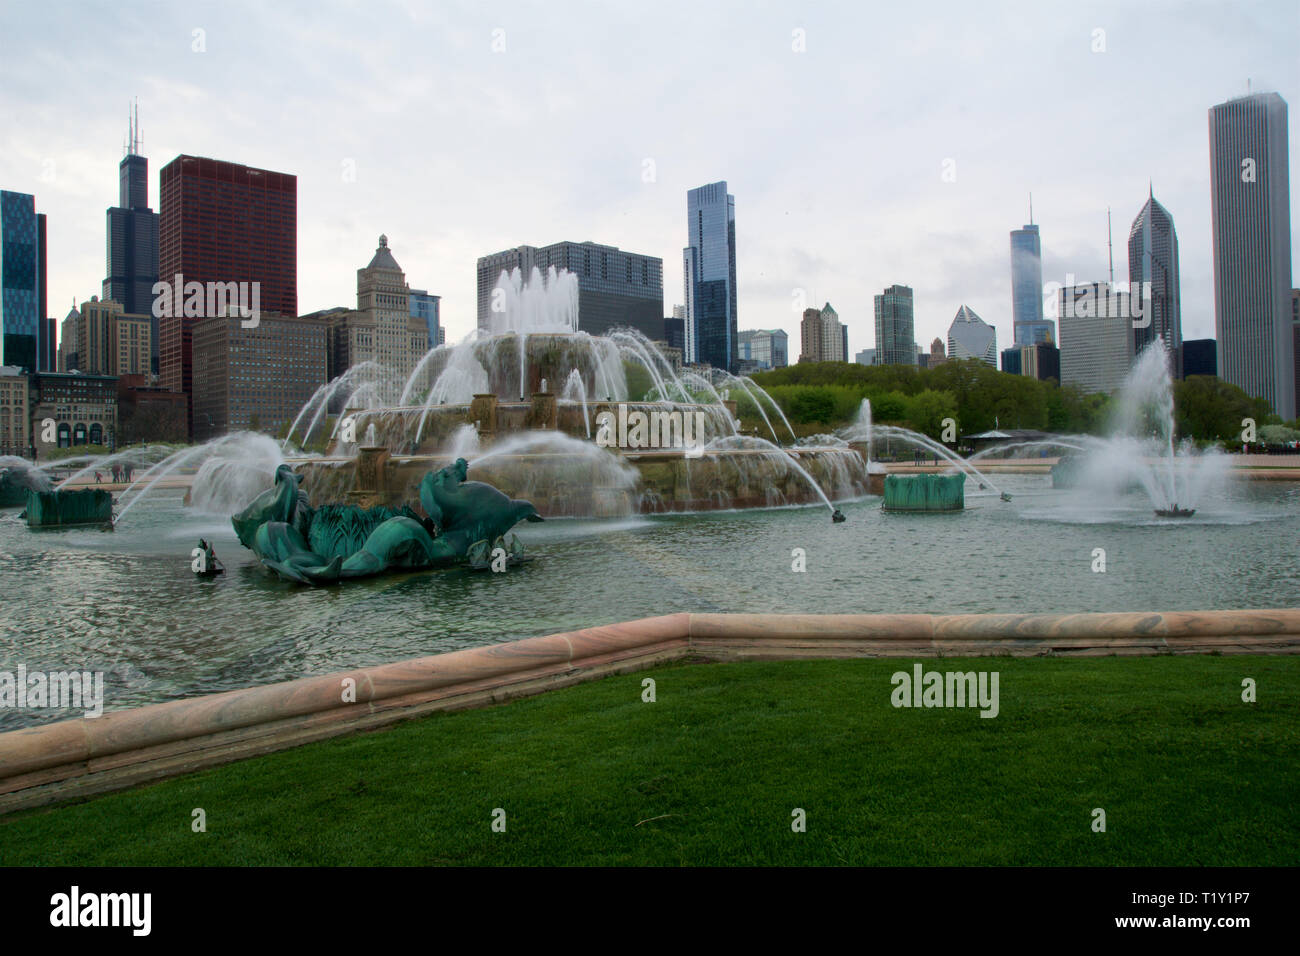 CHICAGO, Illinois, Vereinigte Staaten - 11. Mai, 2018: Der Buckingham Fountain in Chicago in einem Rokoko Hochzeitstorte Stil gebaut und von der Latona inspiriert Stockfoto